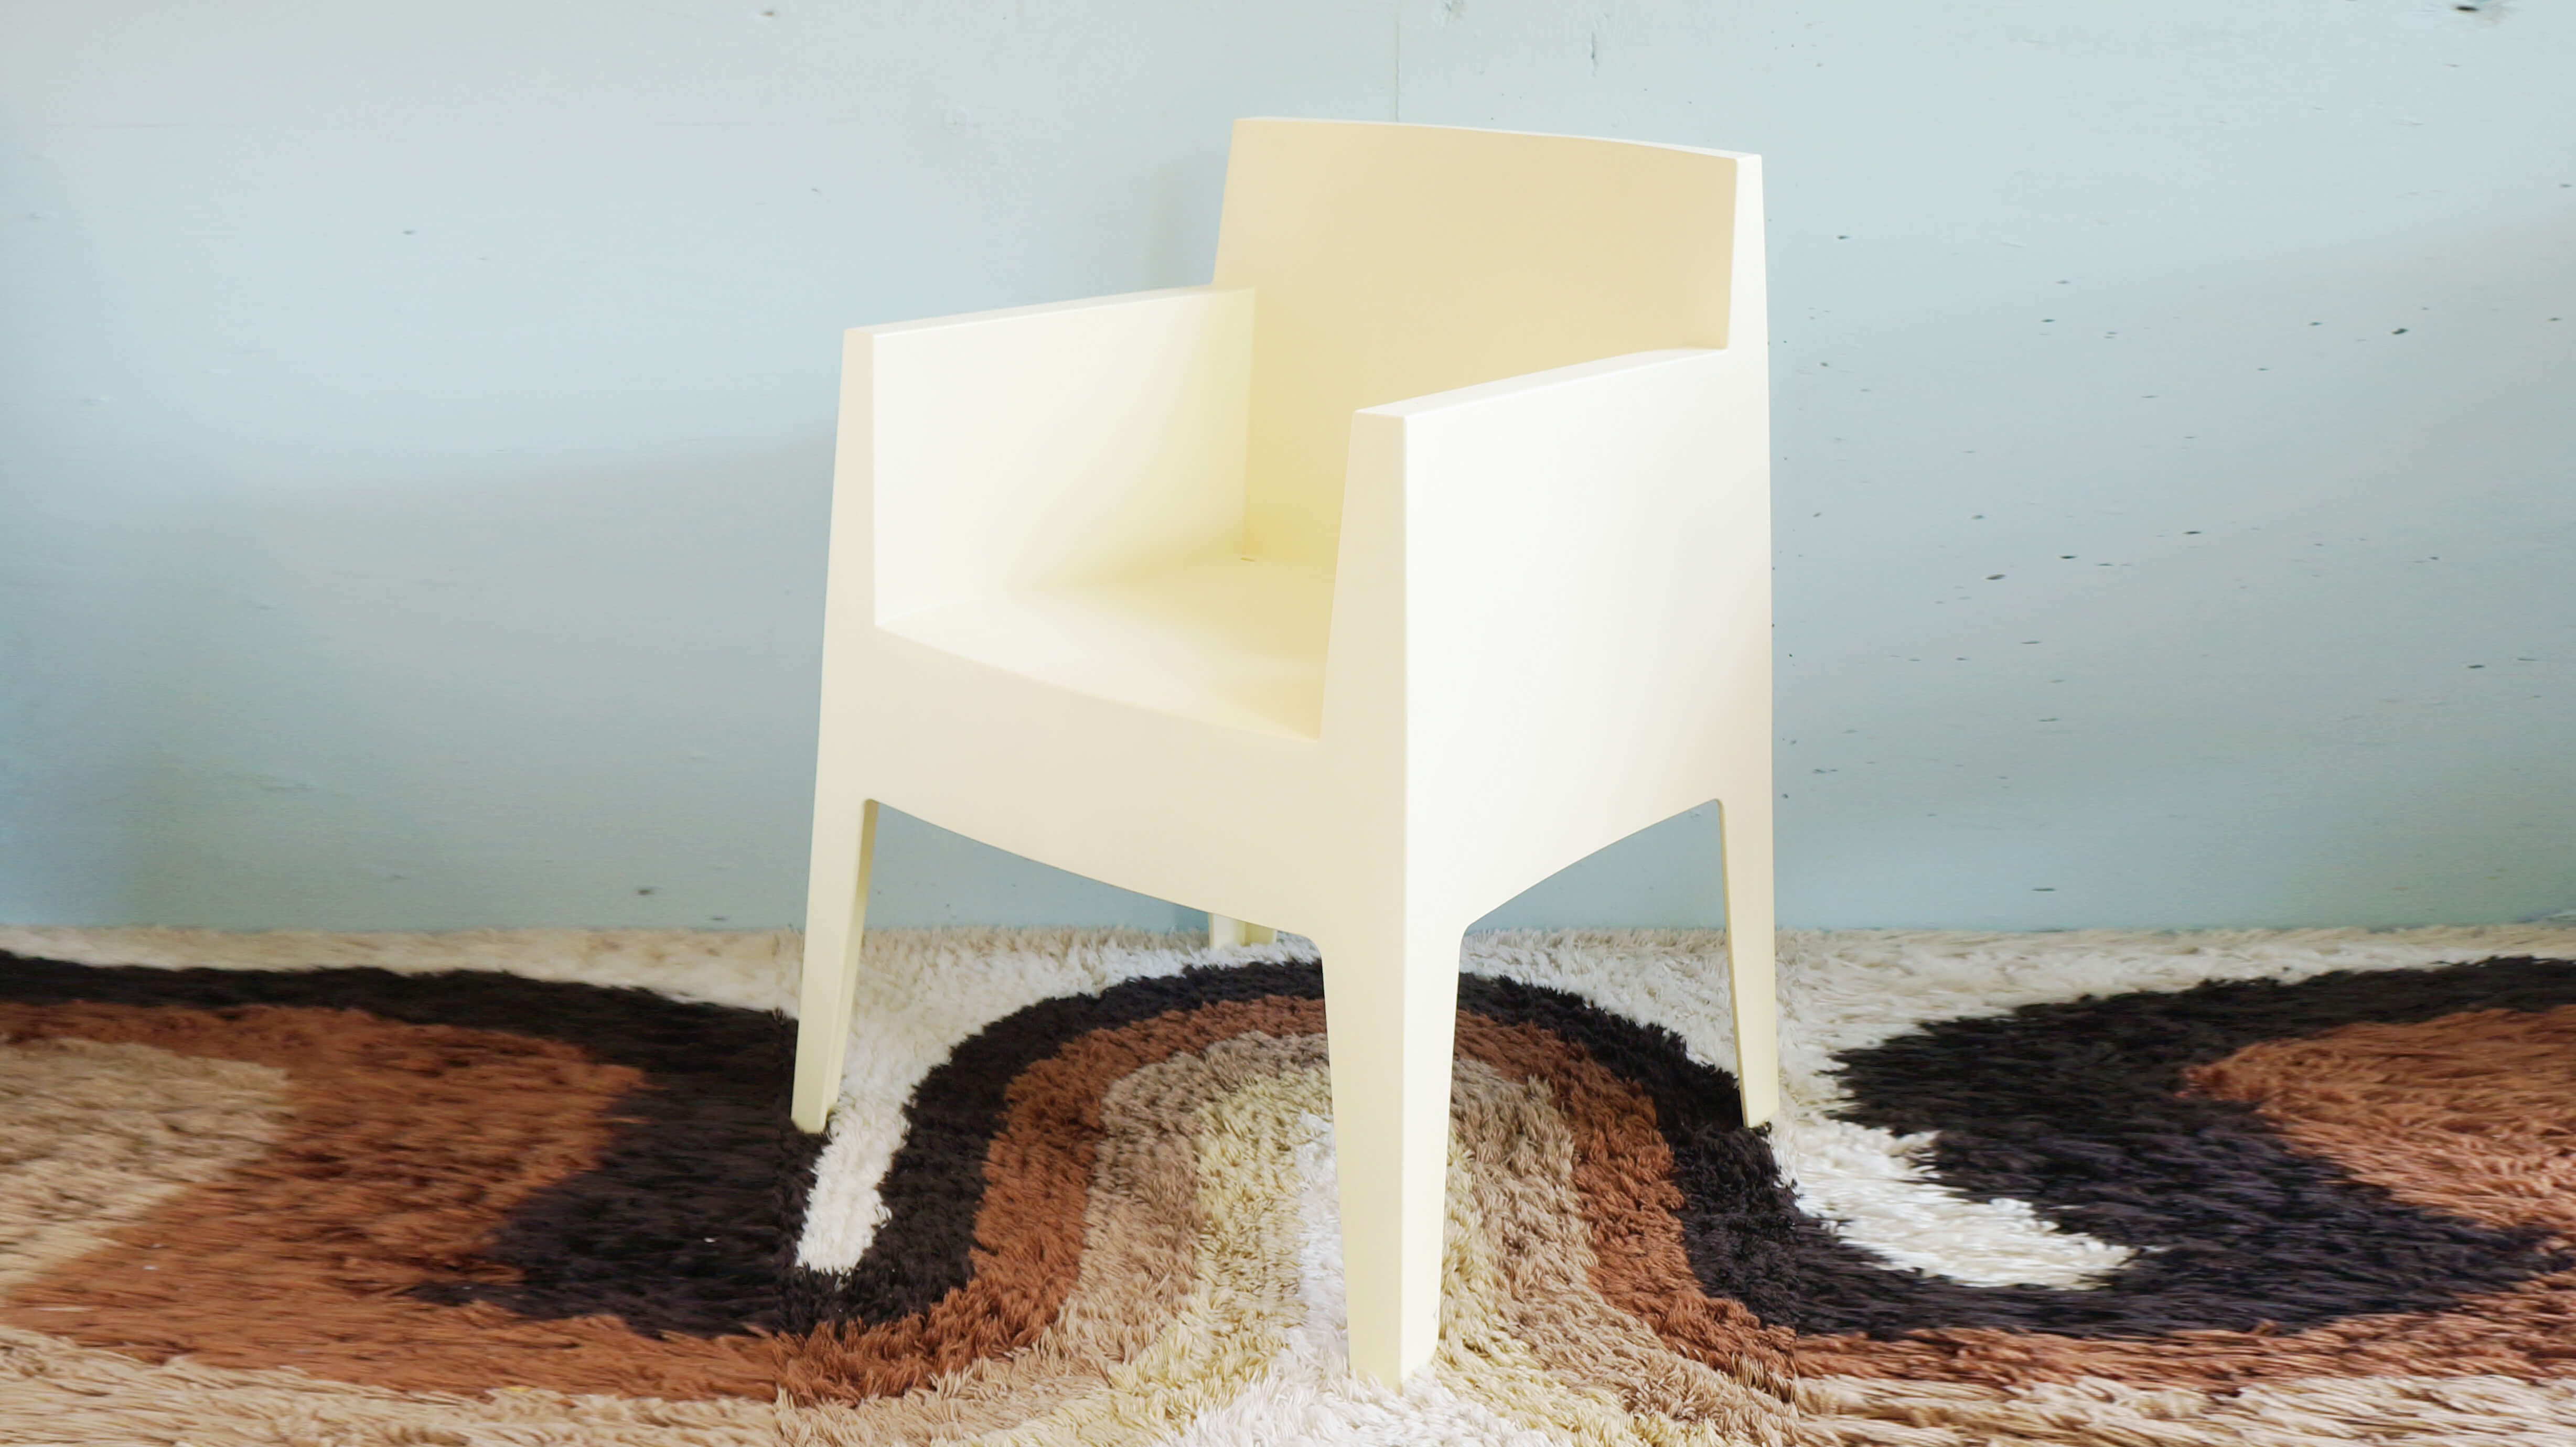 ドリアデ/driadeから、1999年に発表され、それ以来変わらぬ人気を保ち続けるTOYチェア。 この椅子は、建築・インテリア・家具・食器・印刷物・インダストリアルデザイン等の様々な分野で活躍し続けるデザイナー「フィリップスタルク/PhilippeStarck」によって生み出されました。樹脂から生み出されたそのフォルムは、一見硬質な印象を受けがちです。ですが、実際は人体の形に合わせて、座面が緩やかにそしてしなやかにカーブしているため、にぴったりフィットする、素晴らしい座り心地を提供してくれます。 ～【東京都杉並区阿佐ヶ谷北アンティークショップ 古一/ZACK高円寺店】　古一/ふるいちでは出張無料買取も行っております。杉並区周辺はもちろん、世田谷区・目黒区・武蔵野市・新宿区等の東京近郊のお見積もりも！ビンテージ家具・インテリア雑貨・ランプ・USED品・ リサイクルなら古一/フルイチへ～